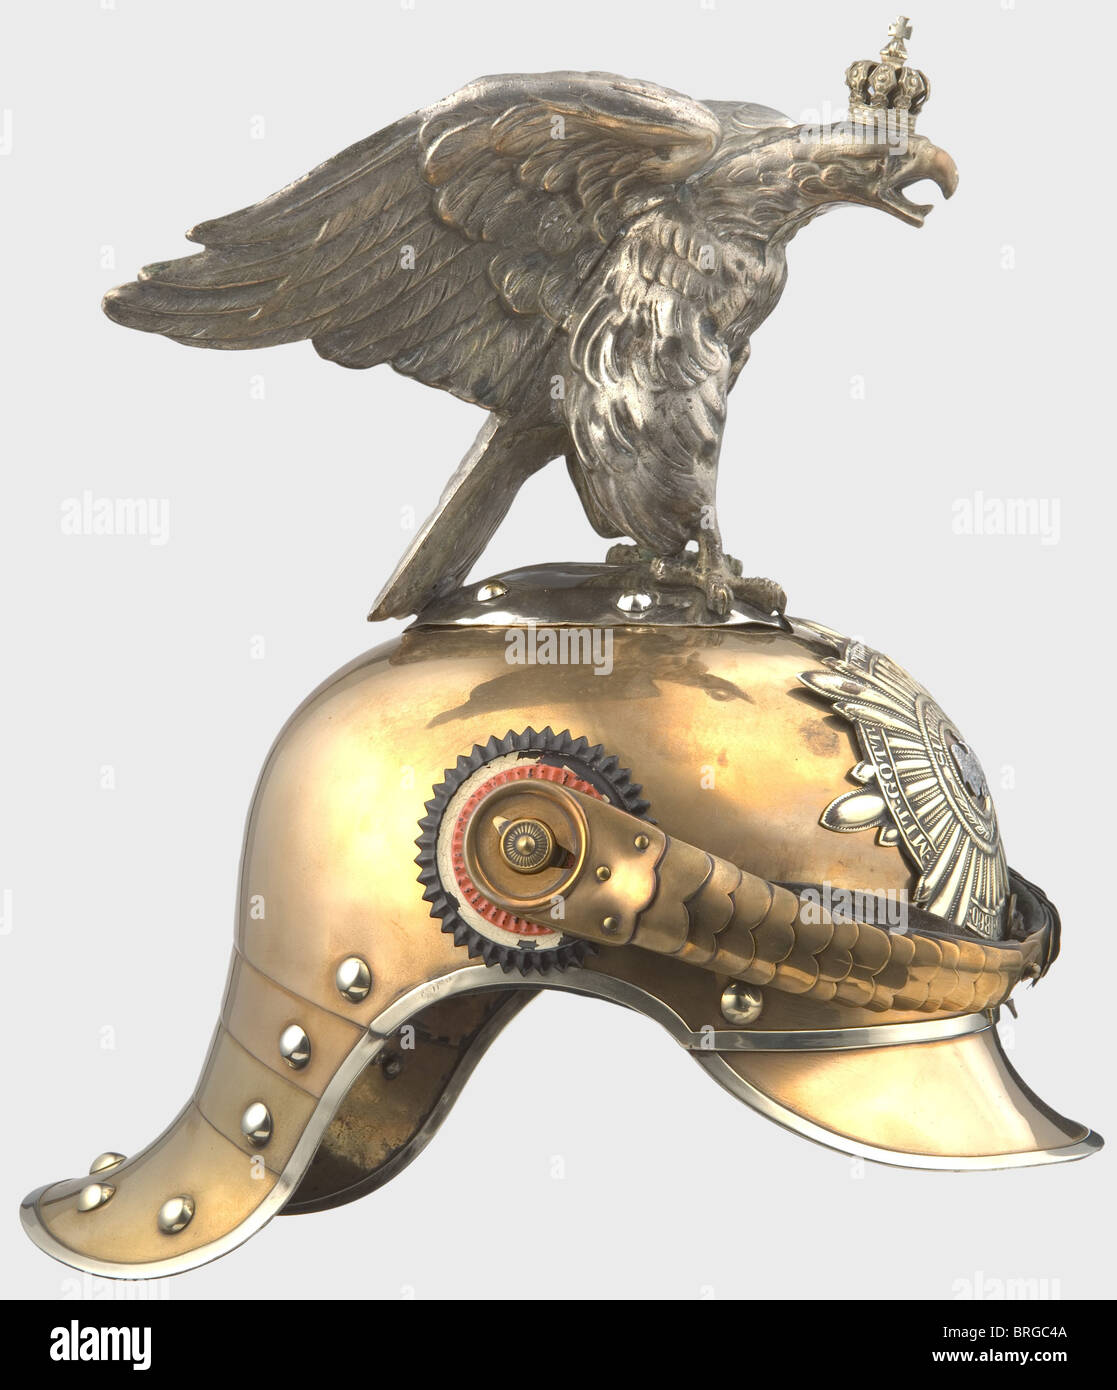 Un casque modèle 1889 avec aigle à parade pour hommes enlistés, du crâne de  Tombac du Régiment des gardes du corps avec garniture en nickel-argent et  rivets. Étoile de la protection en